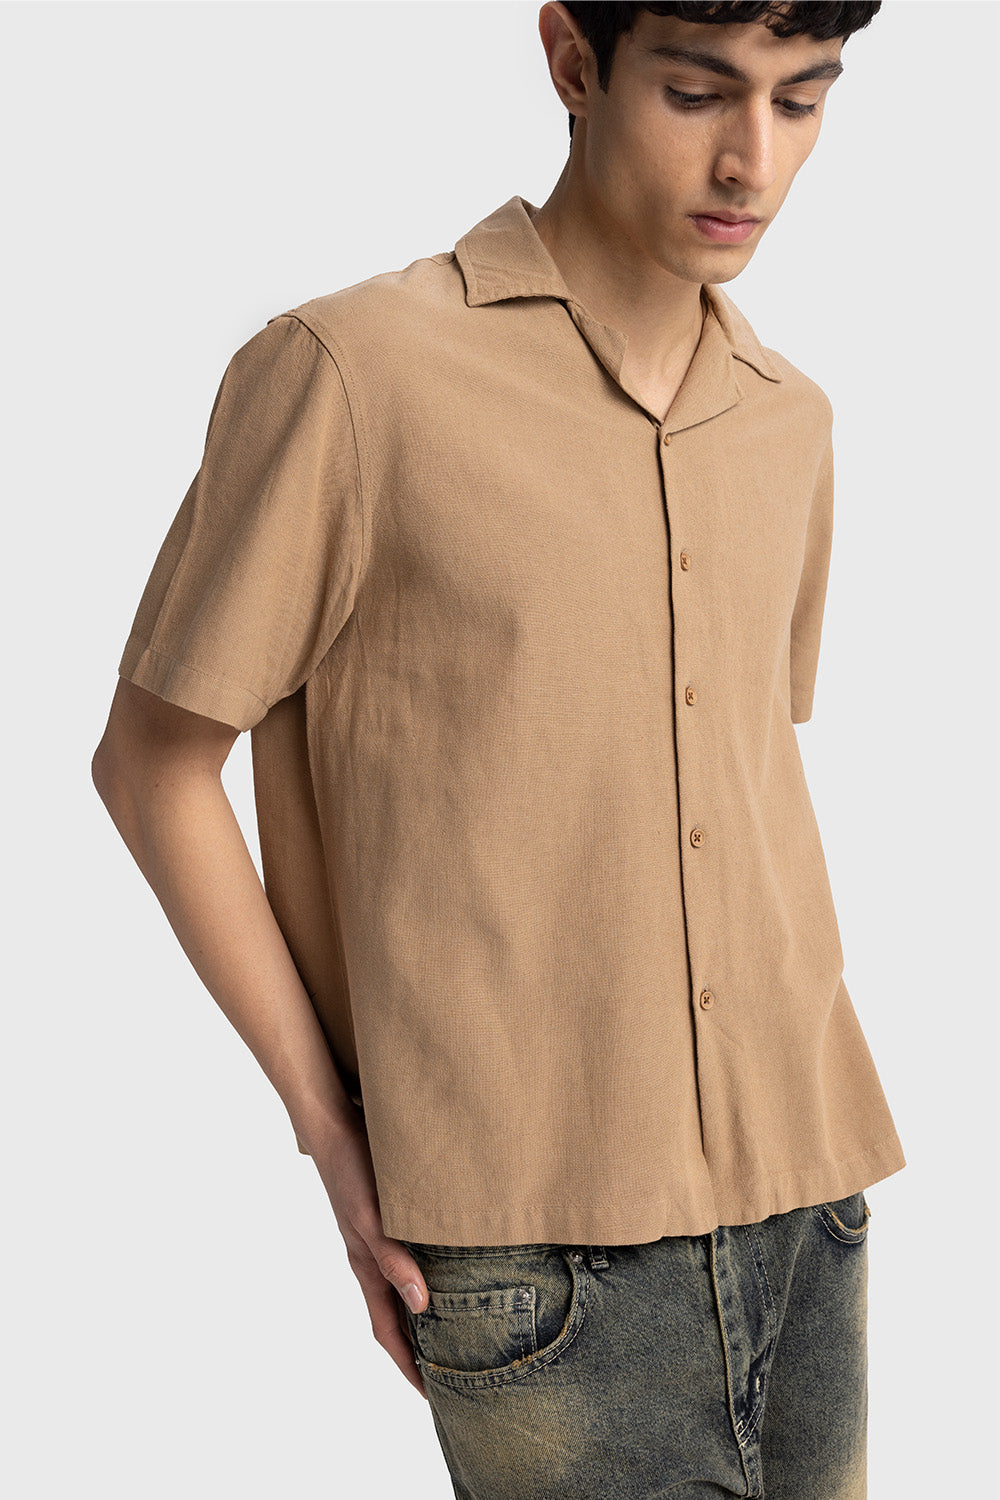 Giesto Linen Short Sleeve Shirt Relaxed Fit